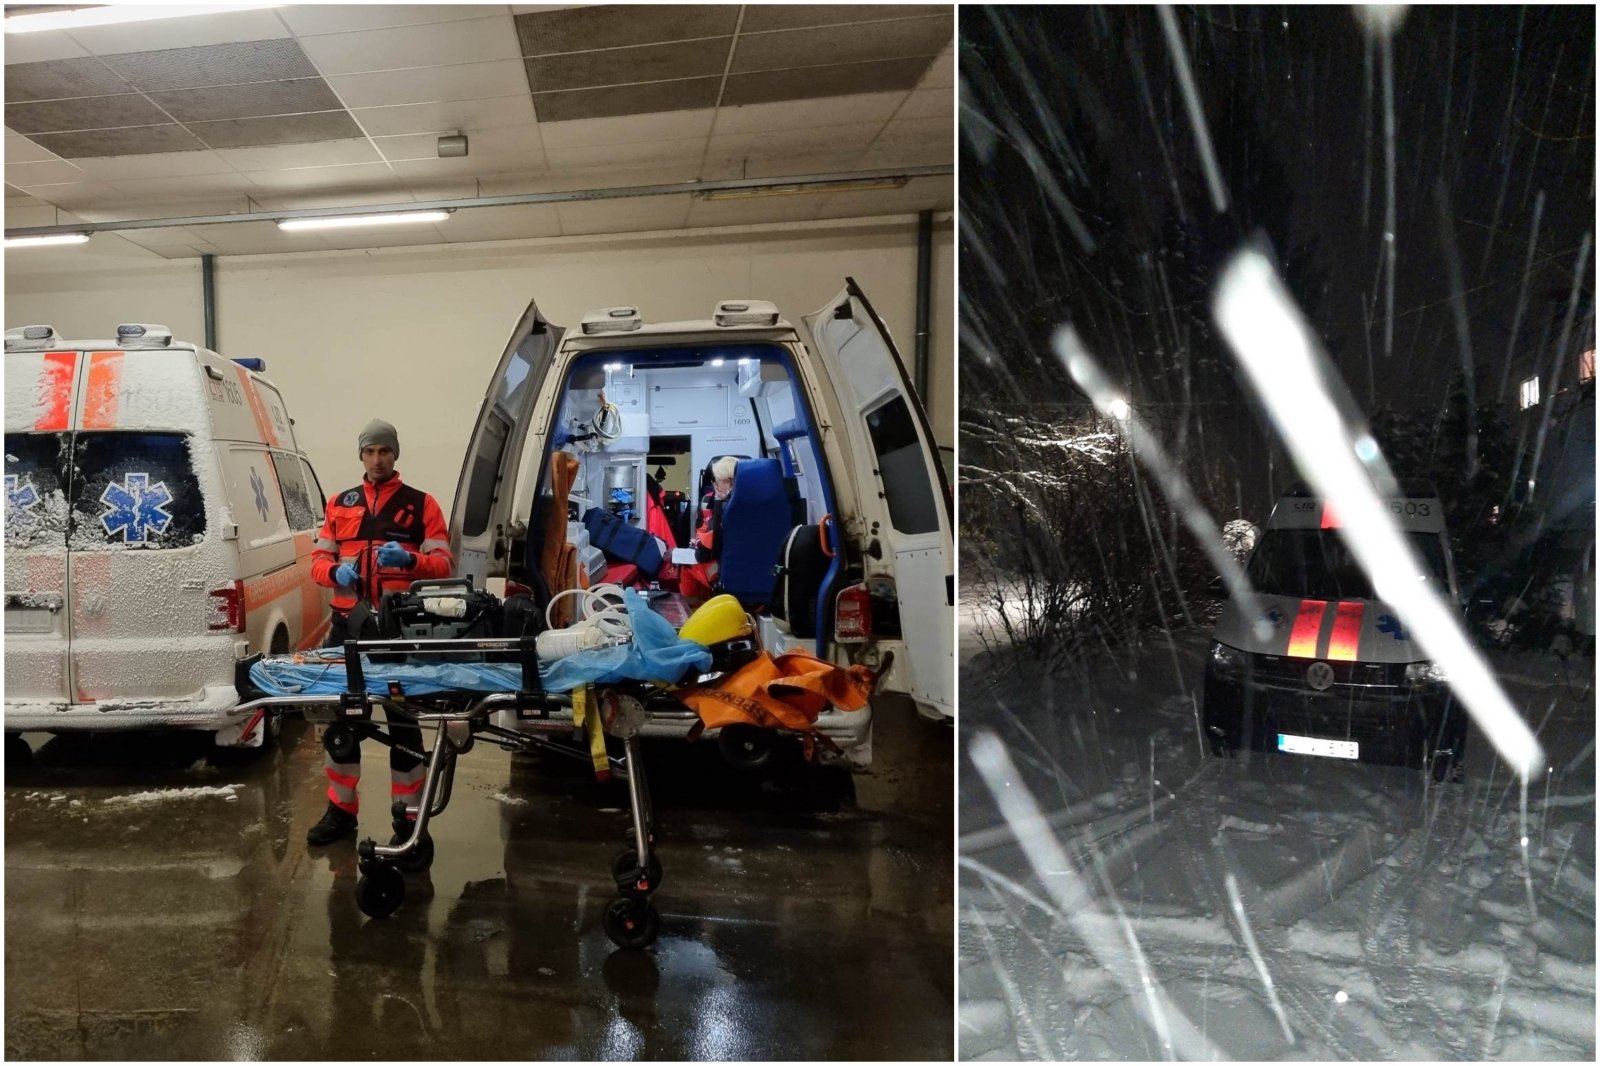 I Kaunas-distriktet hadde legene en vanskelig oppgave: under en snøstorm reddet de en mann som hadde kollapset i to og ikke hadde tegn til liv.